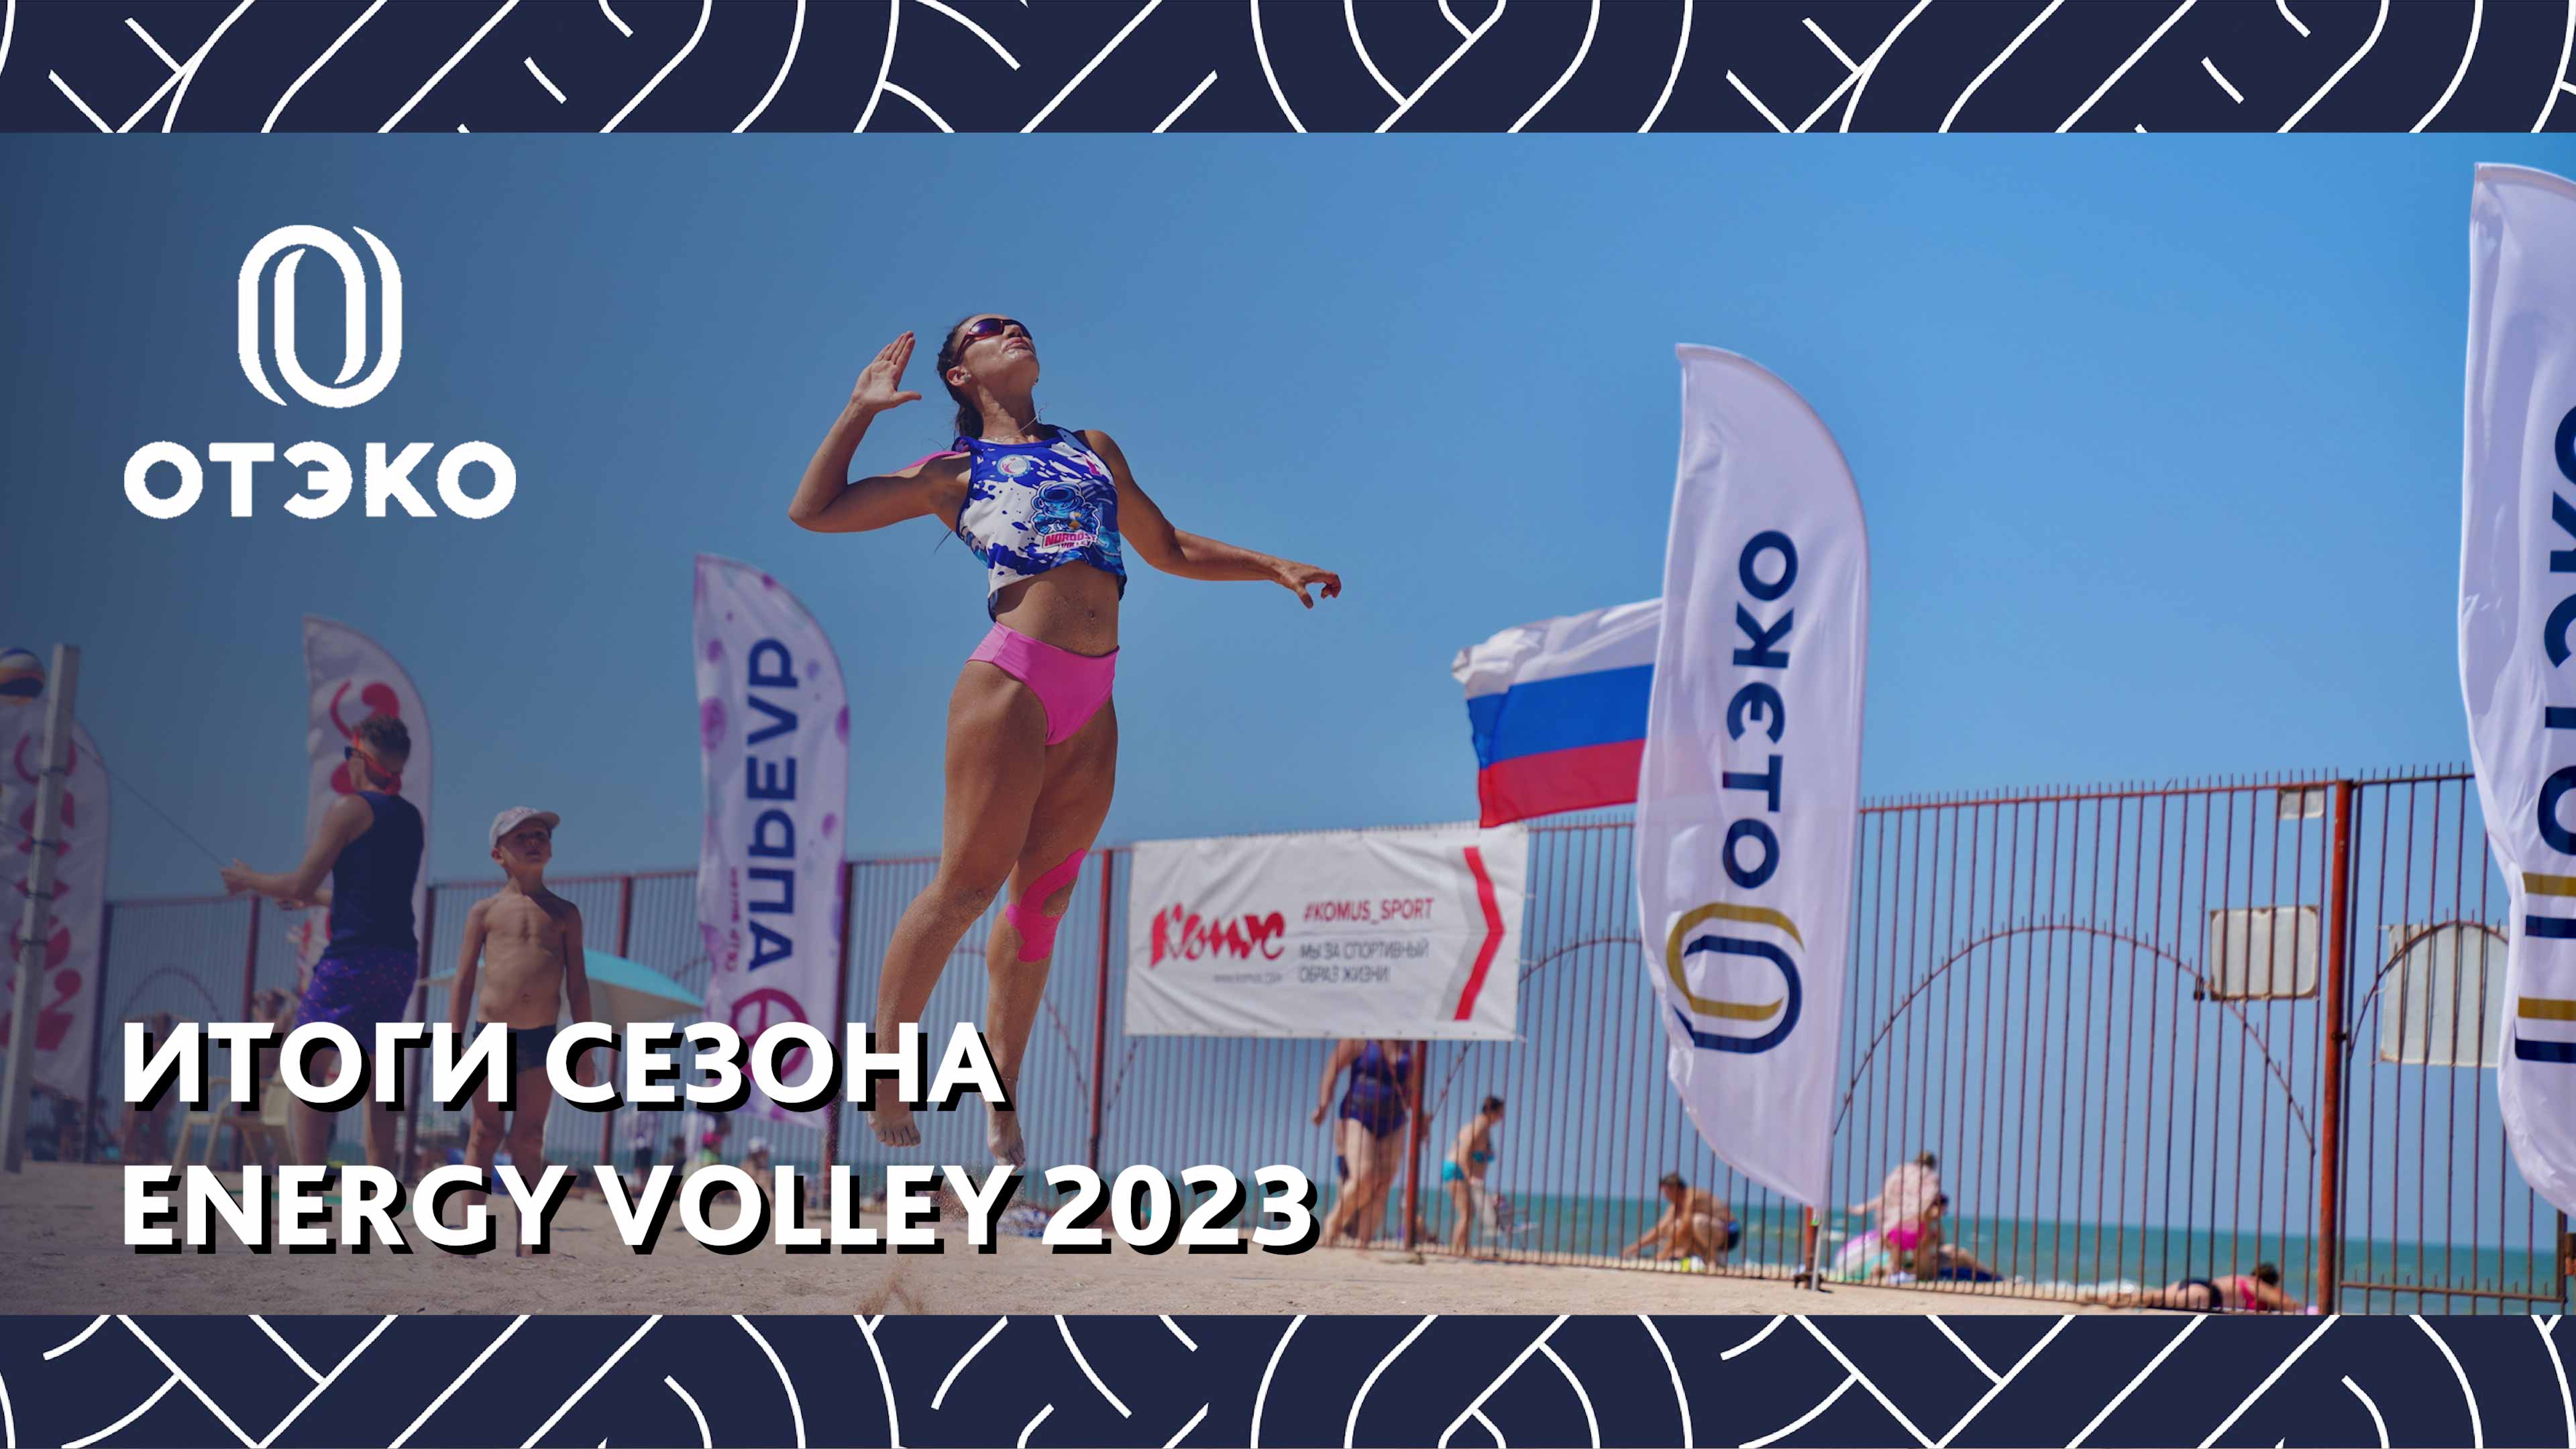 Итоги сезона Energy Volley 2023 с ОТЭКО